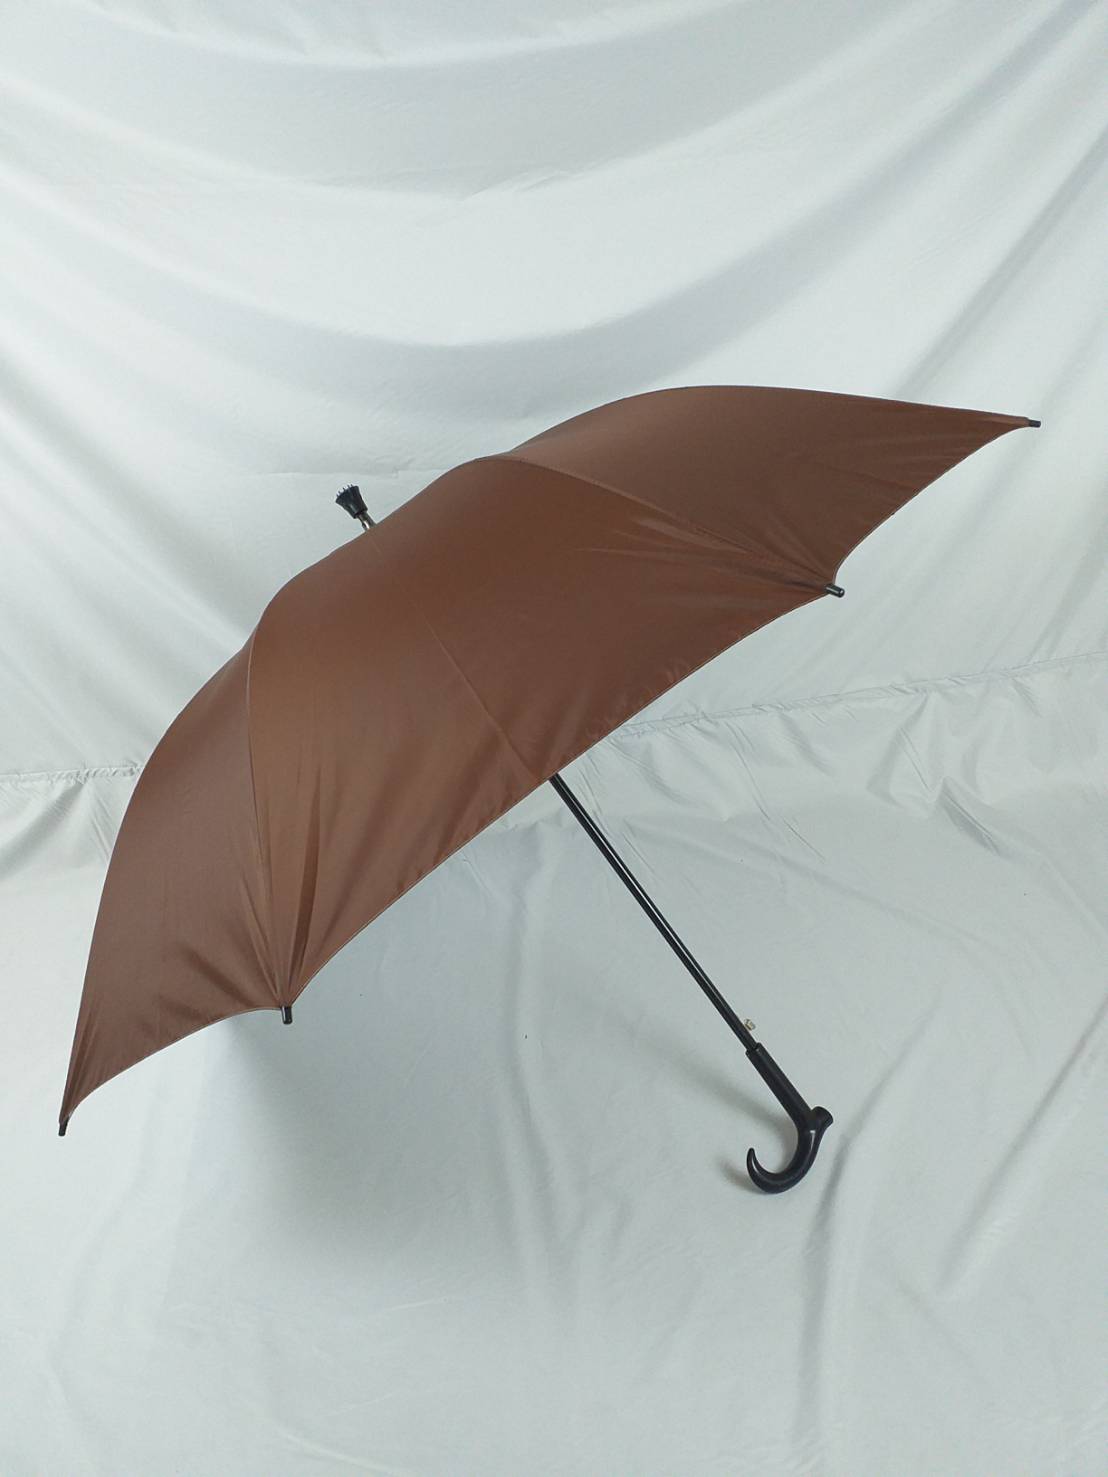 ร่มกอล์ฟ ร่มพระ  รหัส28141-3 ร่มถวายพระสงฆ์ ร่ม คันใหญ่ ไม้เท้า แกนเหล็ก เปิดออโต้ ผ้าสีไพร(พระ)  ร่มกันแดด กันน้ำ  ผลิตในไทย golf umbrella